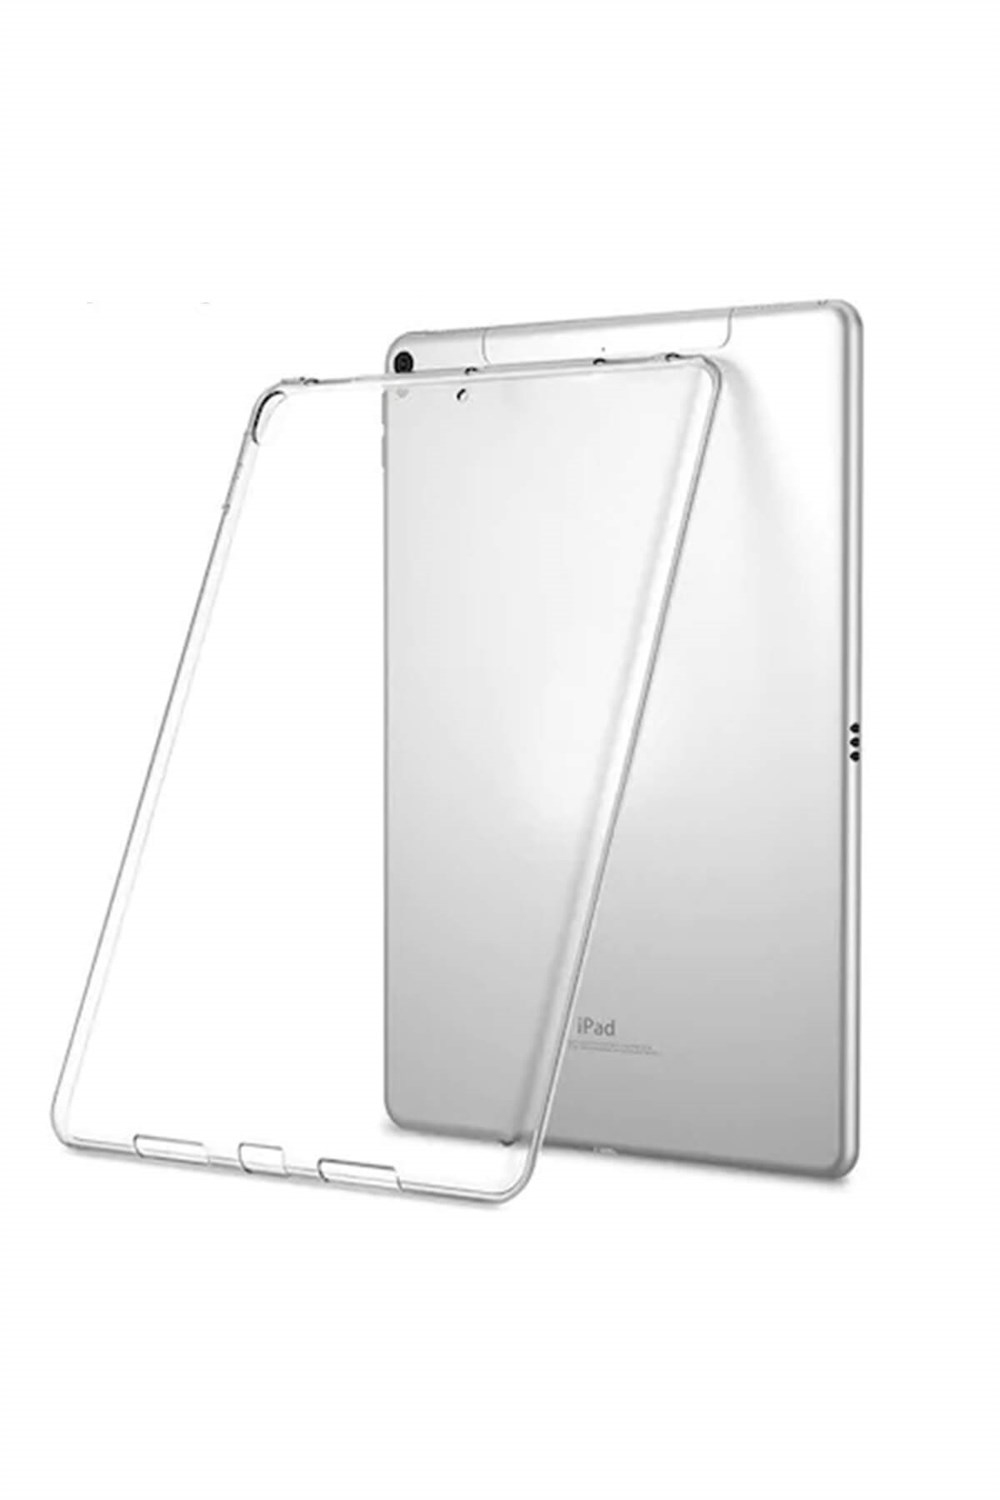 iPad Pro Silikon Tablet Kılıfı (10.5 inç) I Esepetim.com